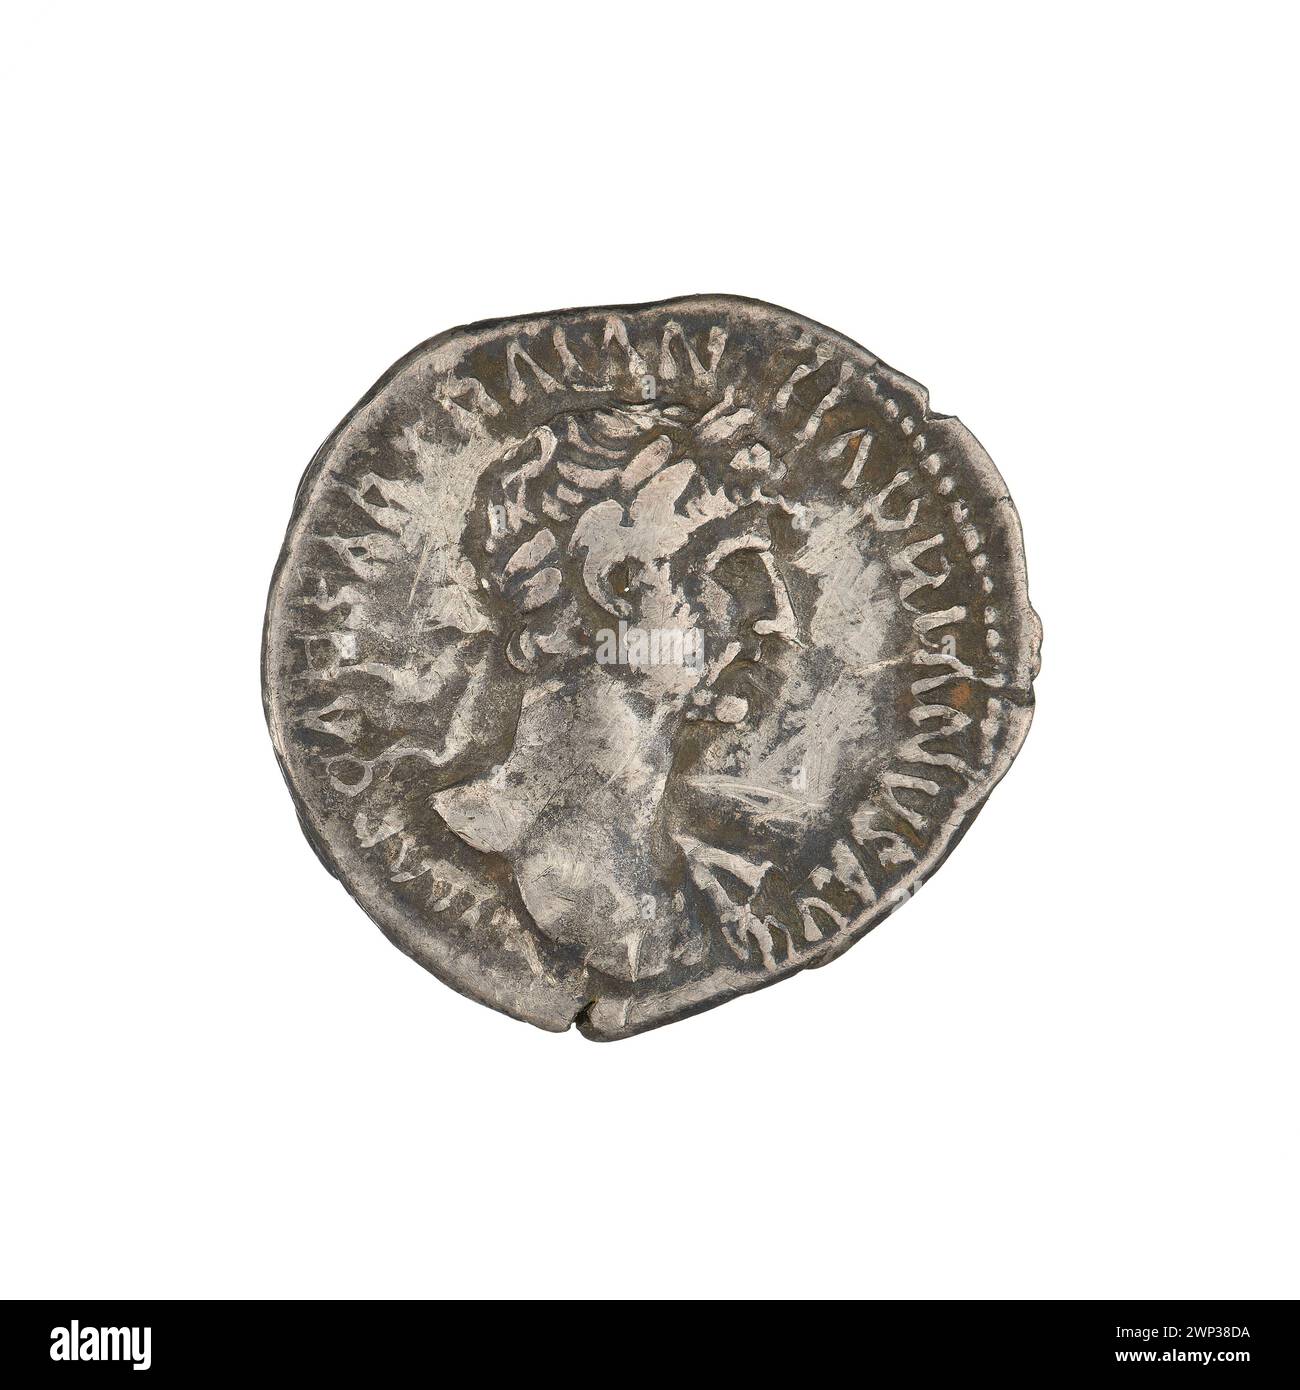 denarius; Hadrian (76-138; Roman emperor 117-138); 118 (114-00-00-117-00-00);PAX (personification), branches, busts, laurel wreaths Stock Photo